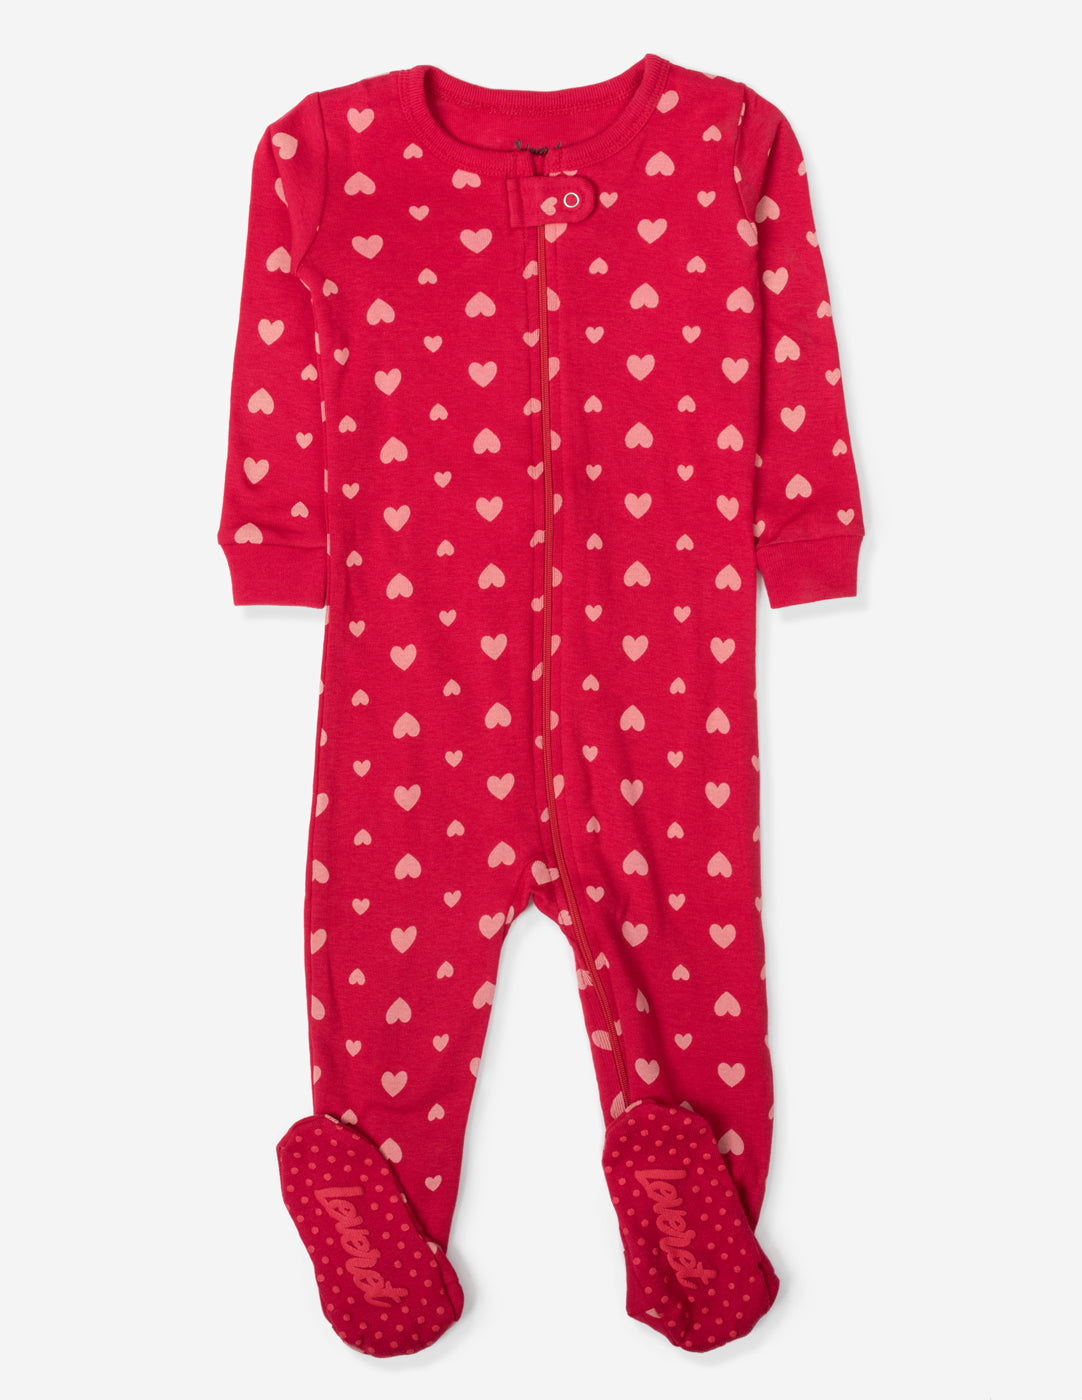 Baby Footed Hearts Pajamas